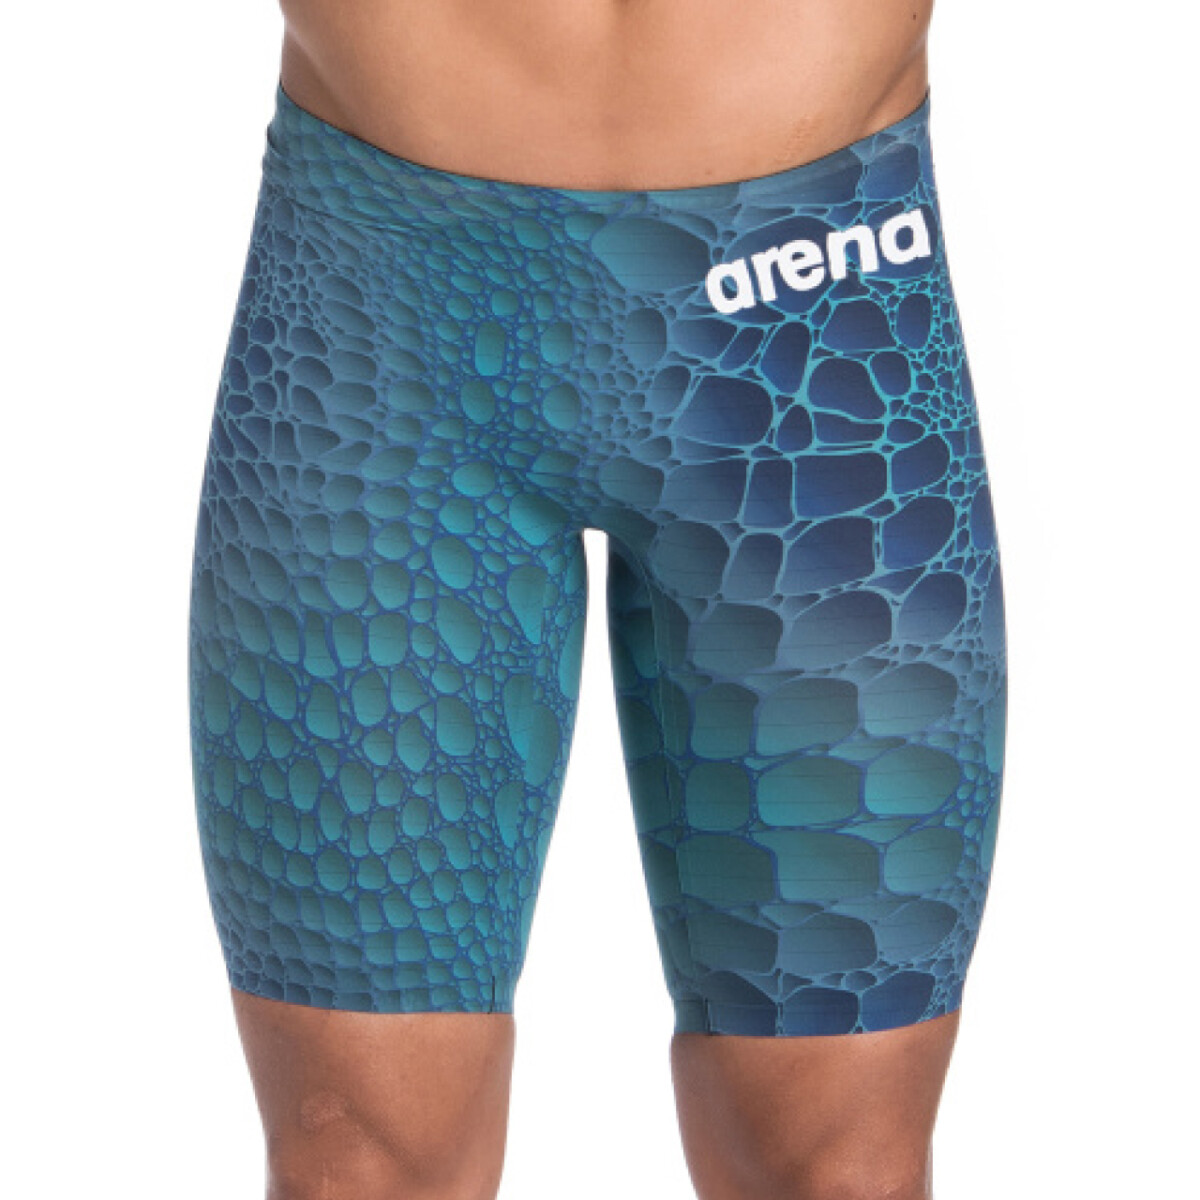 Malla De Competición Para Hombre Arena Men's Powerskin Carbon Air2 Limited Edition Jammer - Azul Mar Caimano 